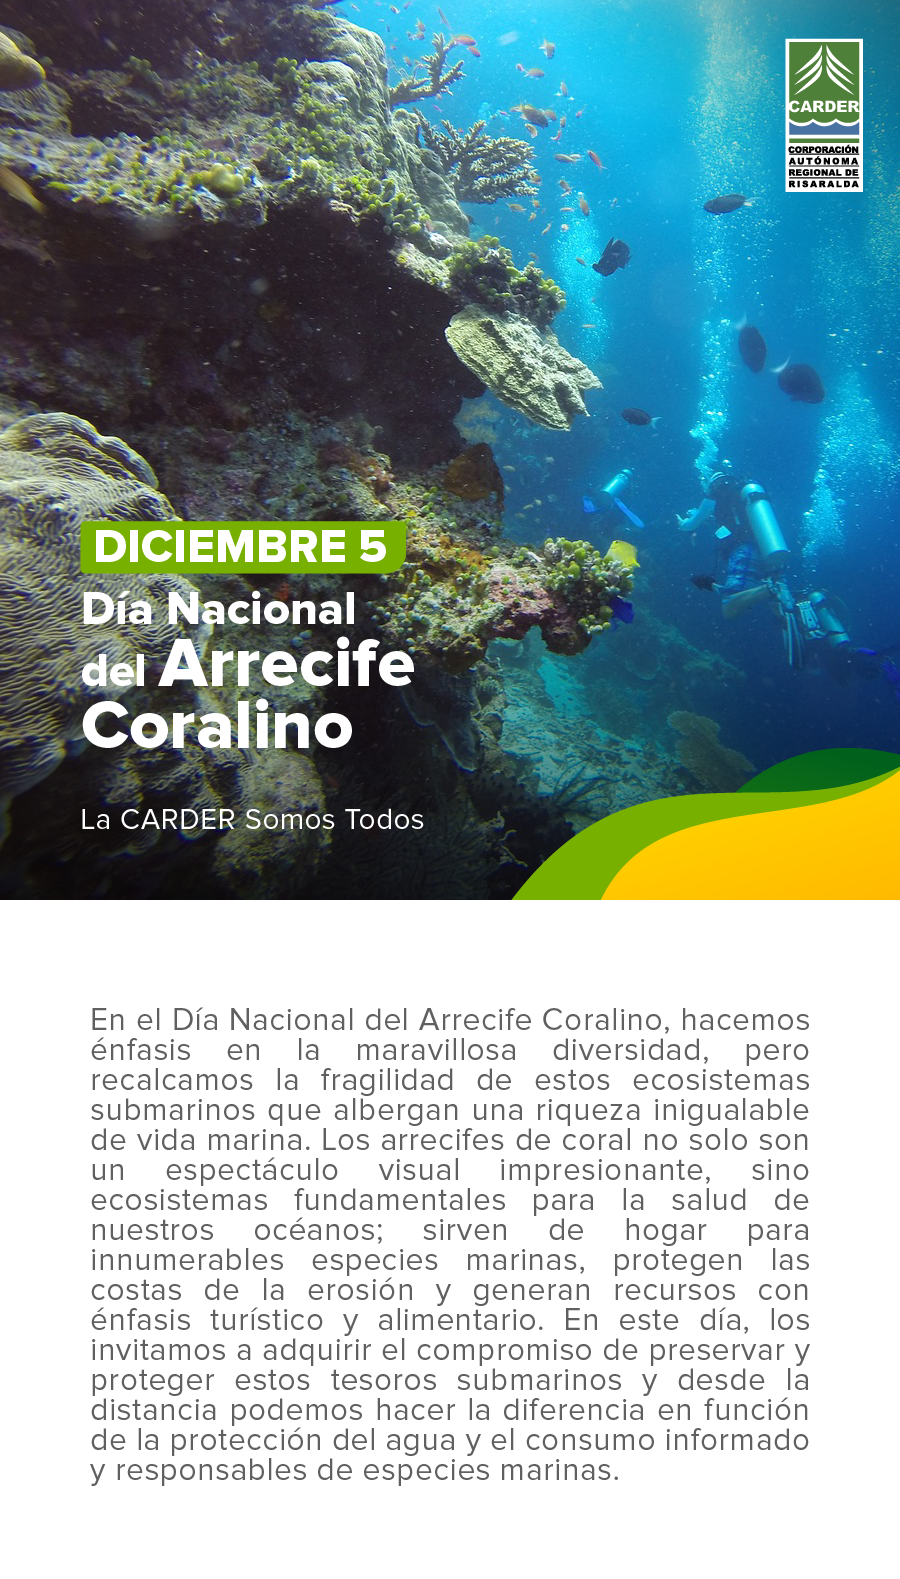 Día Nacional del Arrecife Coralino